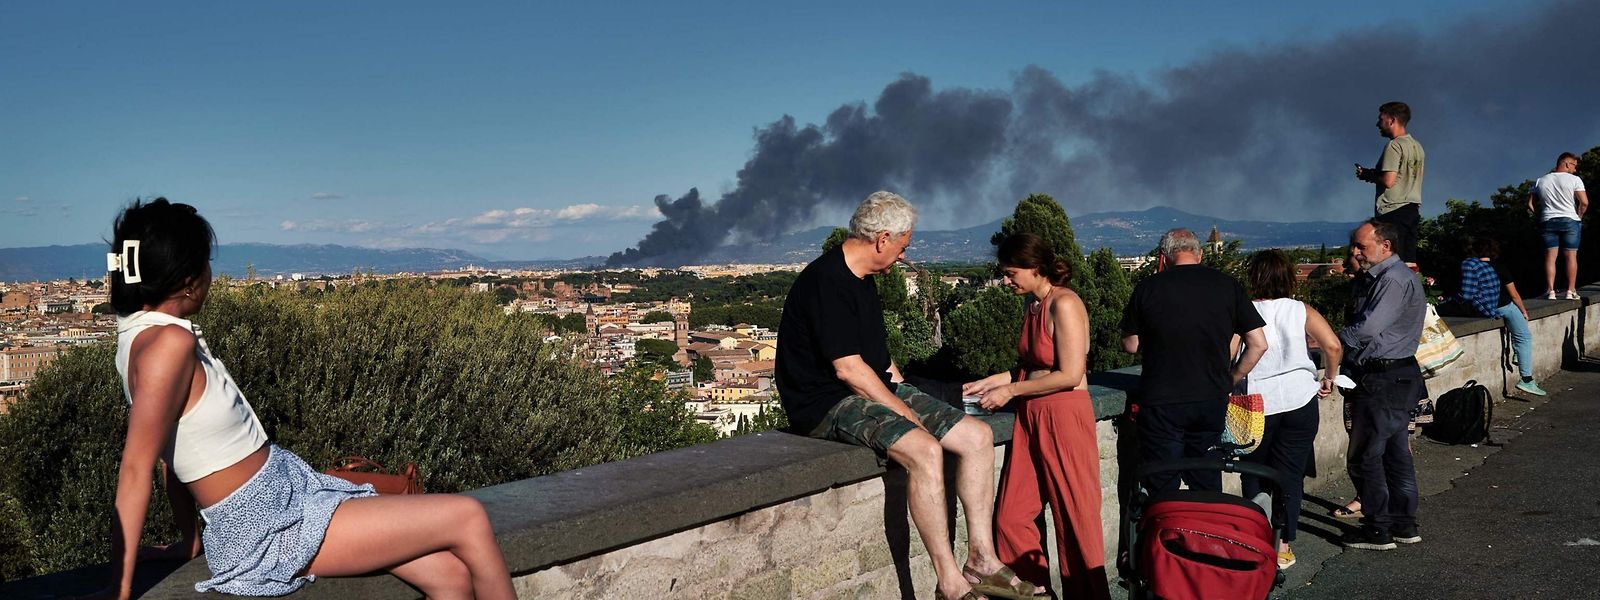 Von der beliebten Piazzia Garibaldi aus konnten Einheimische wie Touristen den Brand, der im Distrikt Centocelle ausgebrochen ist, sehen.